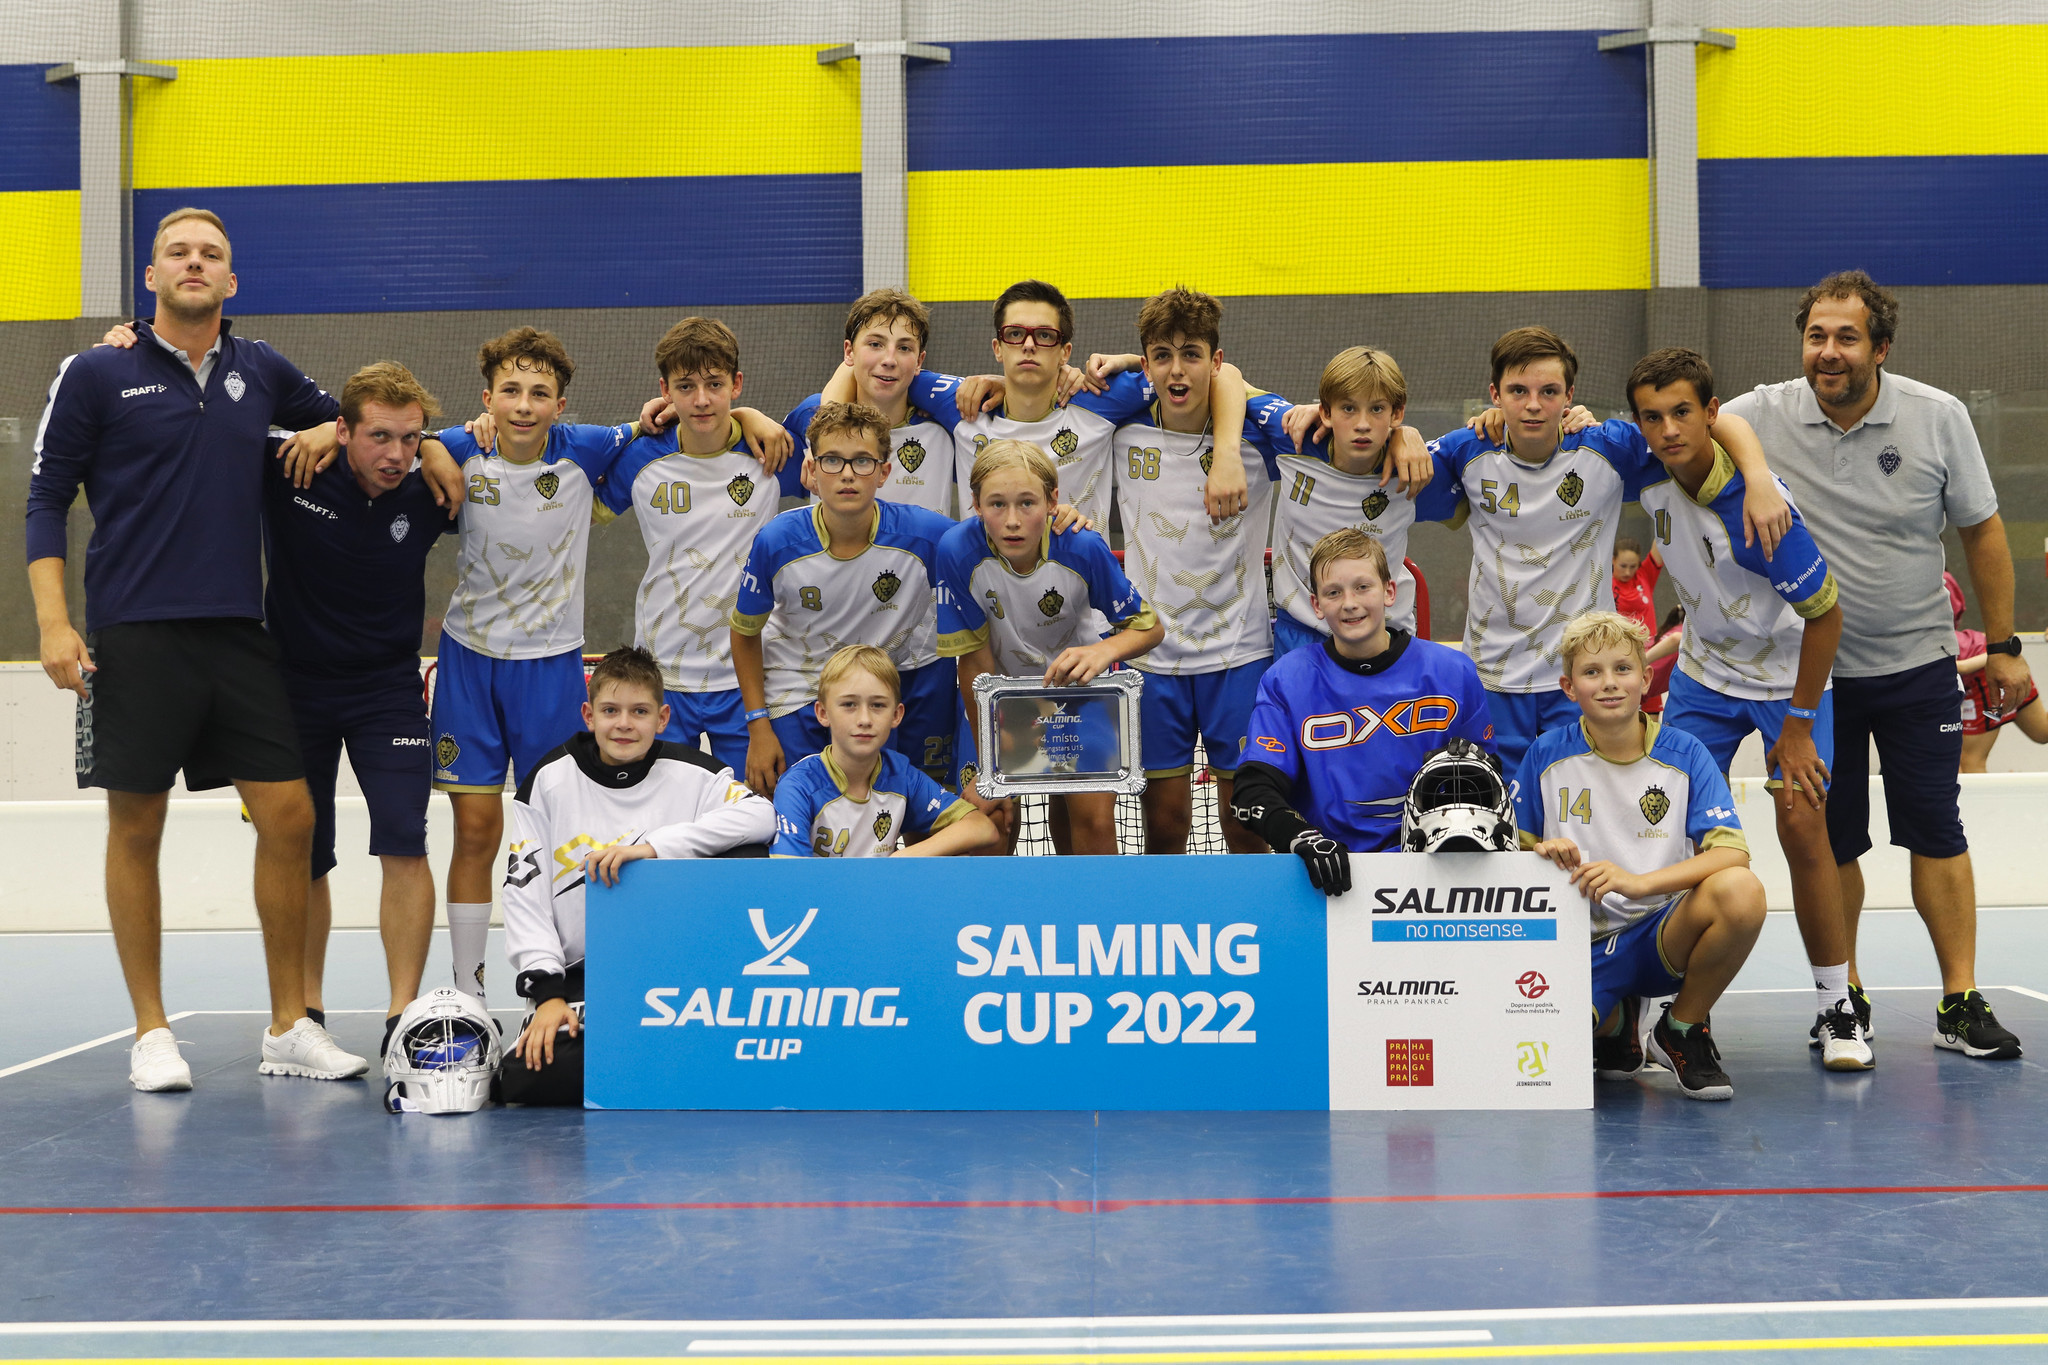 Salming Cup 2022 - Star ci mezi 4 nejlepmi tmy